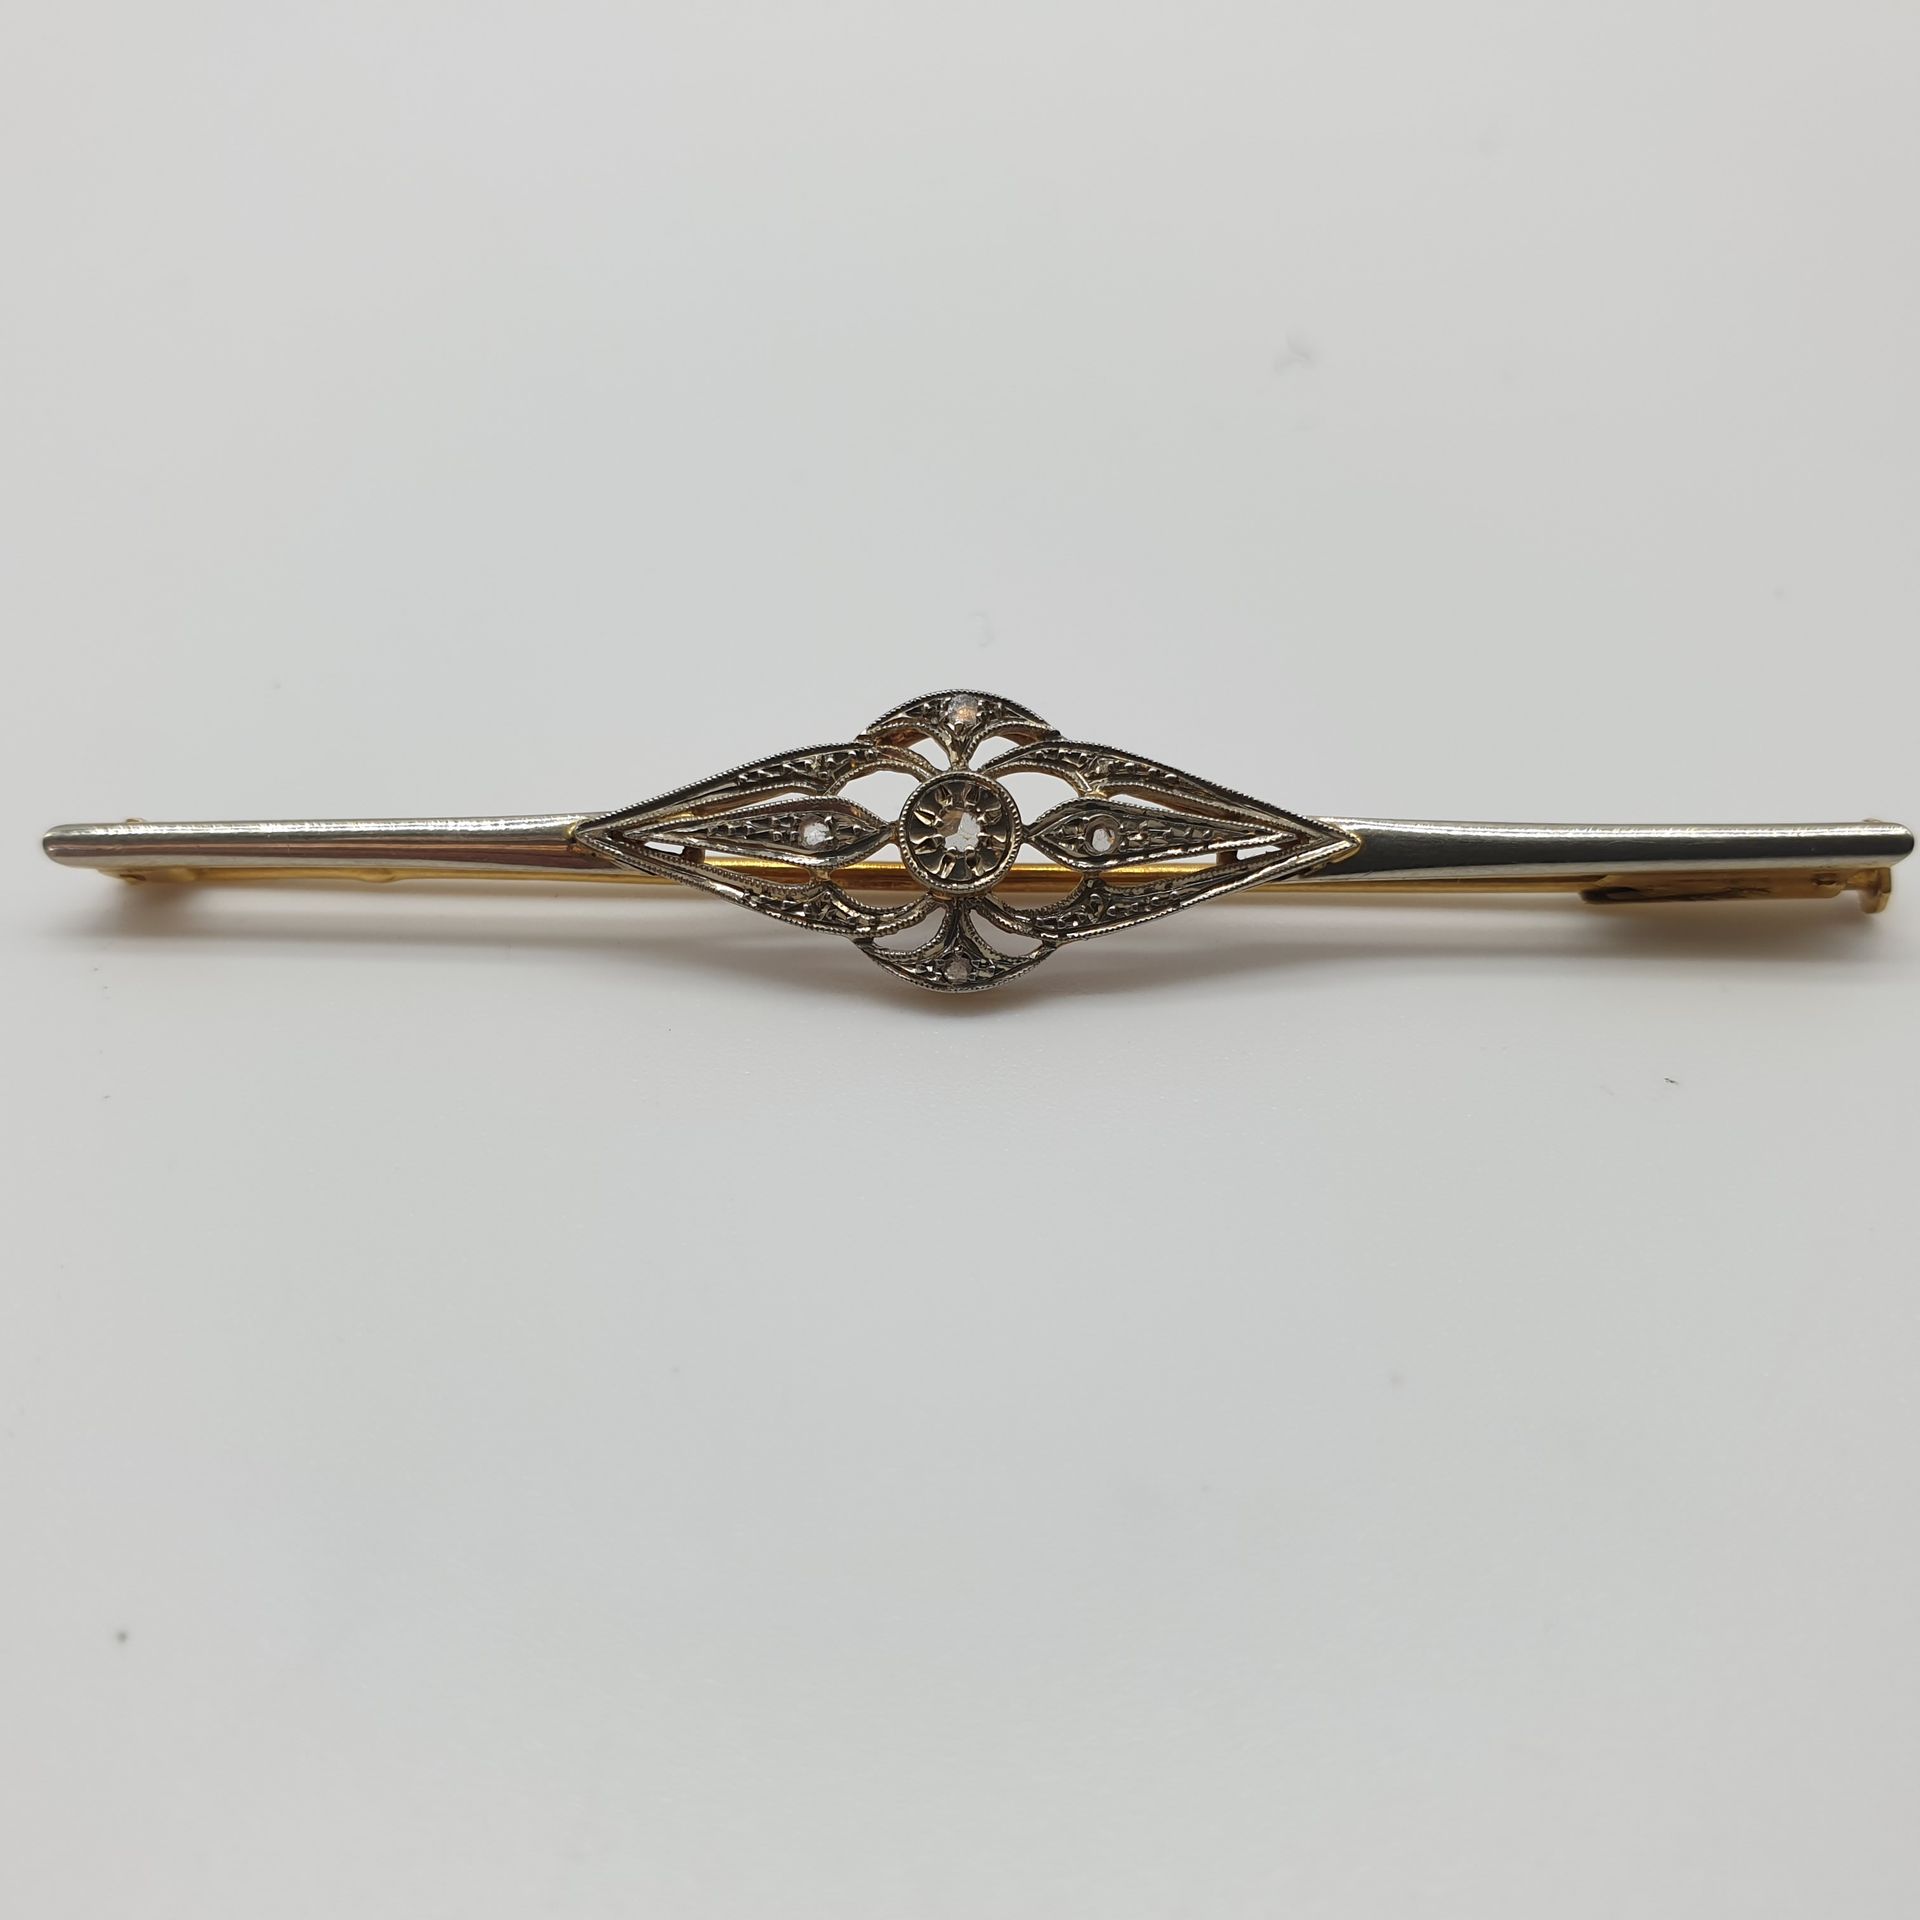 Null 双色750°金条胸针，饰有玫瑰花

毛重：3.51克

法国作品

约1920年